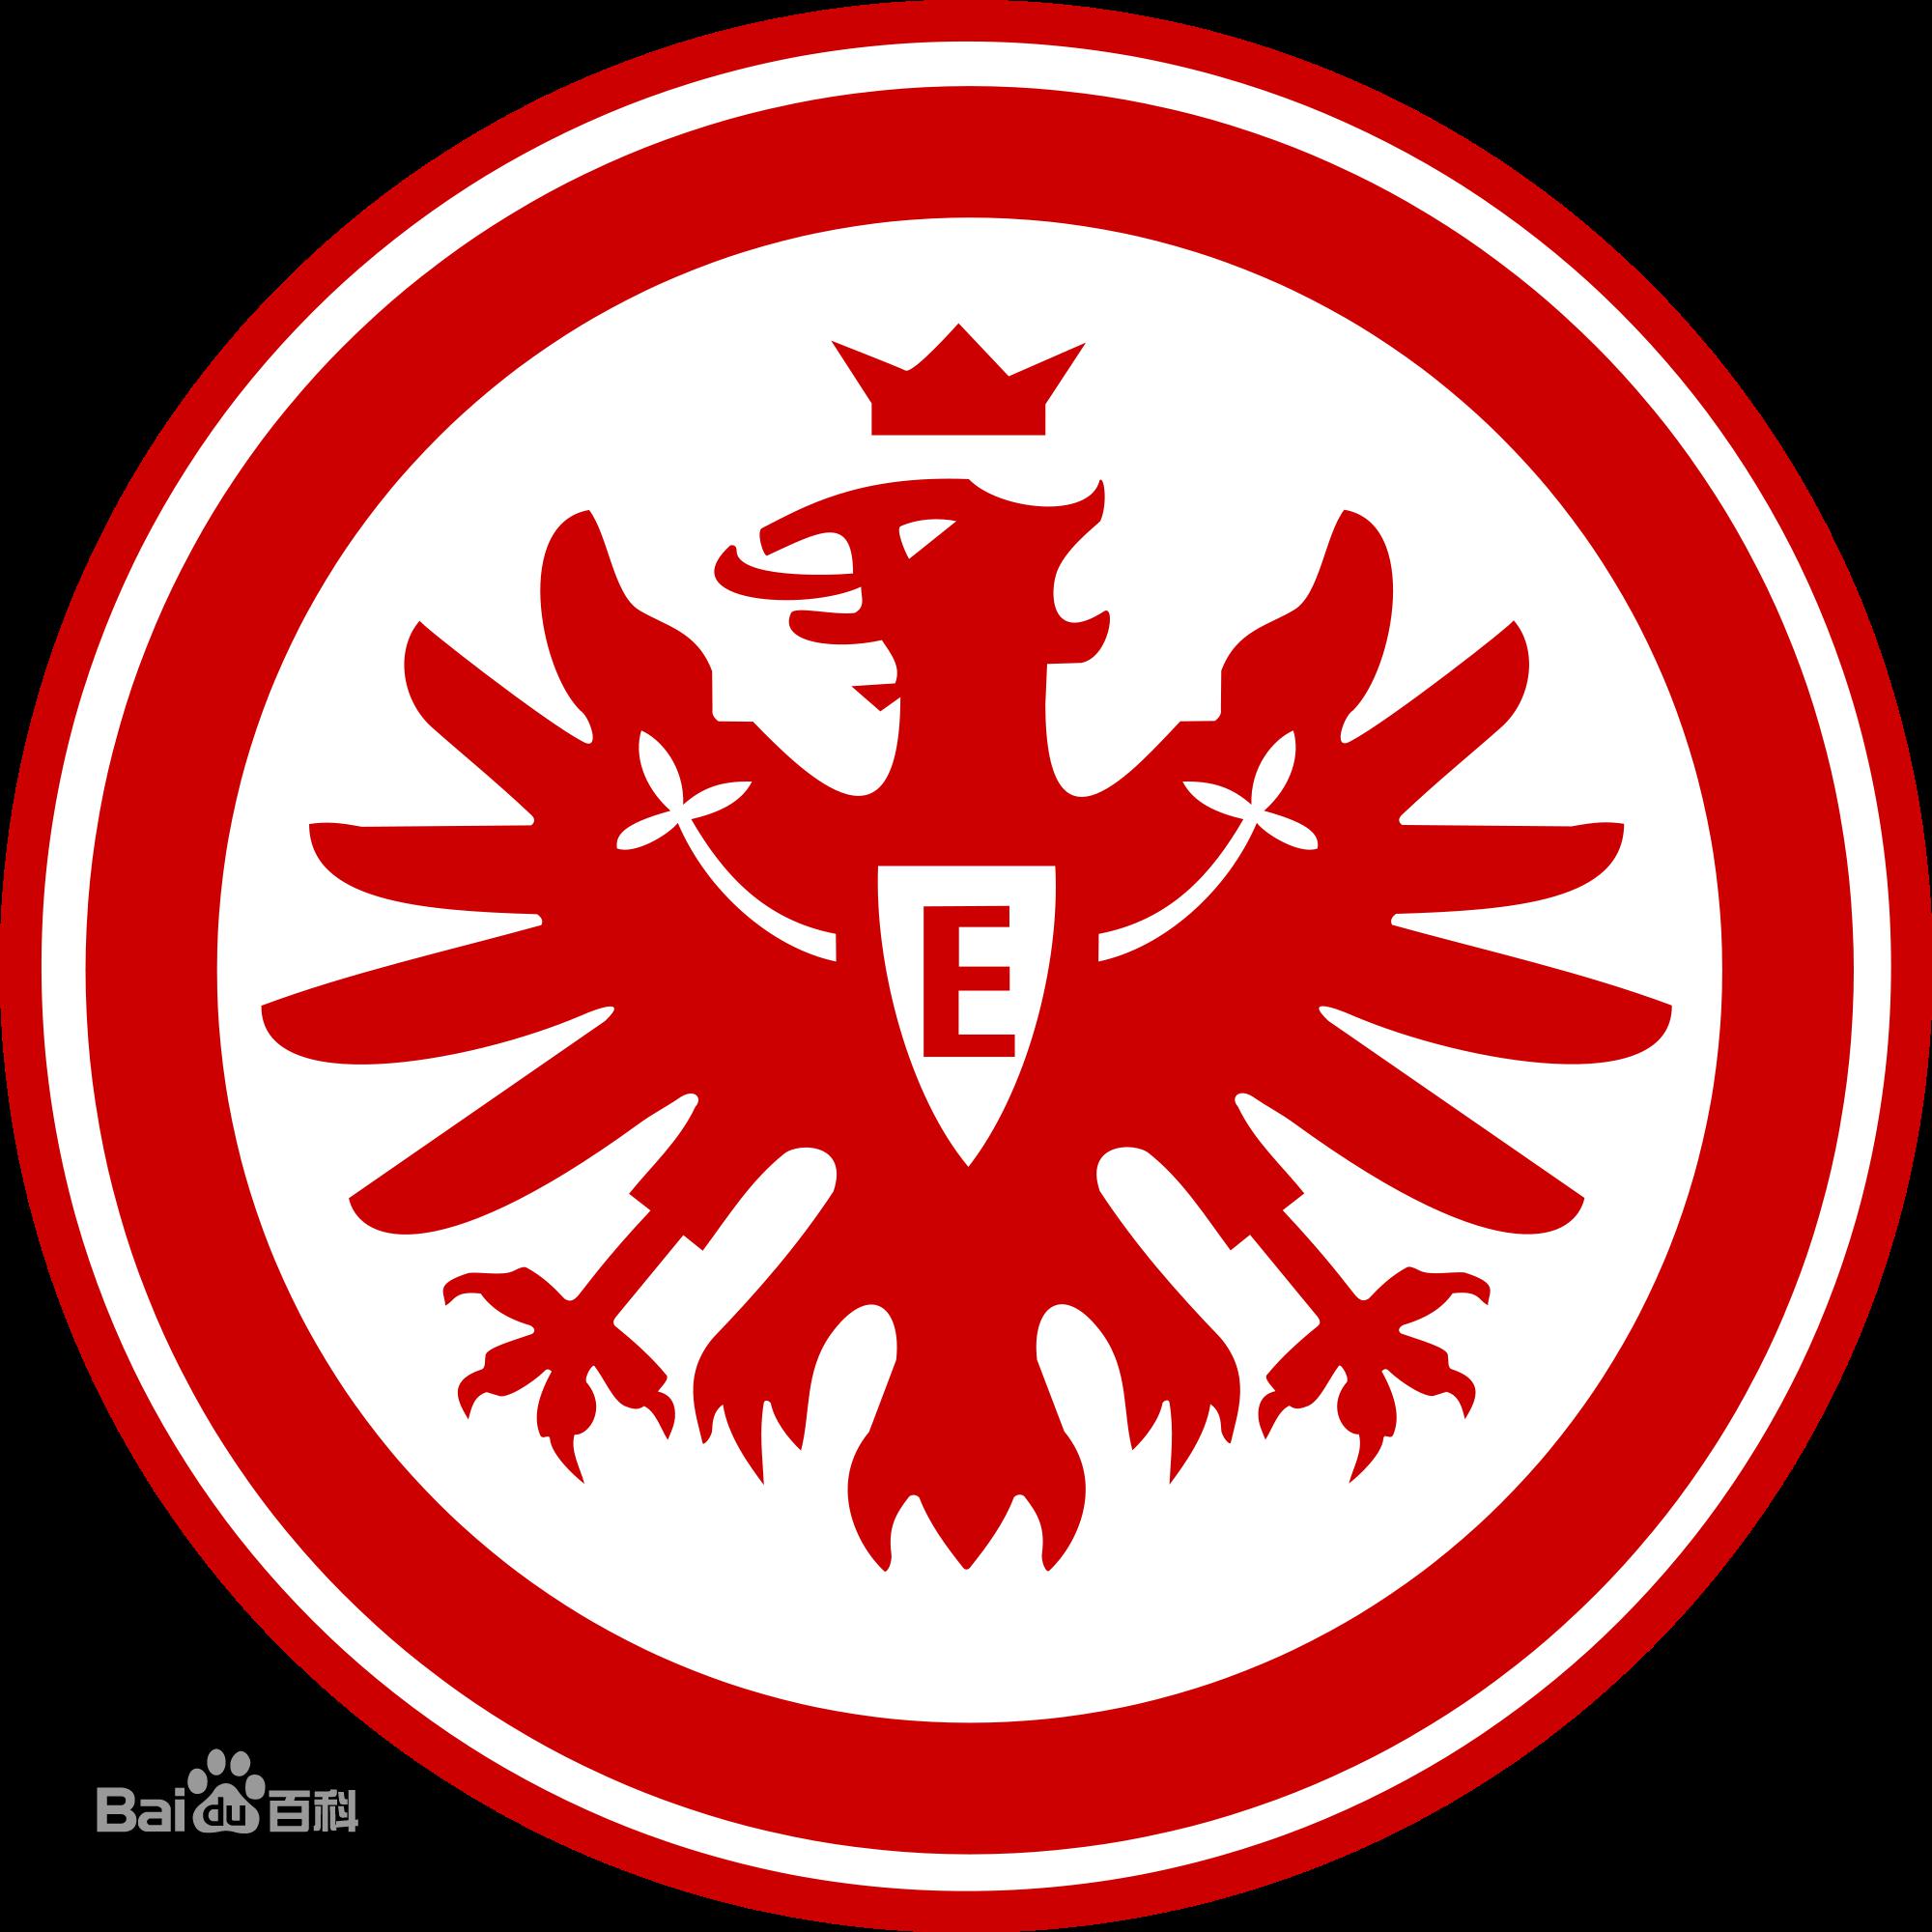 德甲所有球队蓝色队徽 新赛季德甲球队队徽(6)